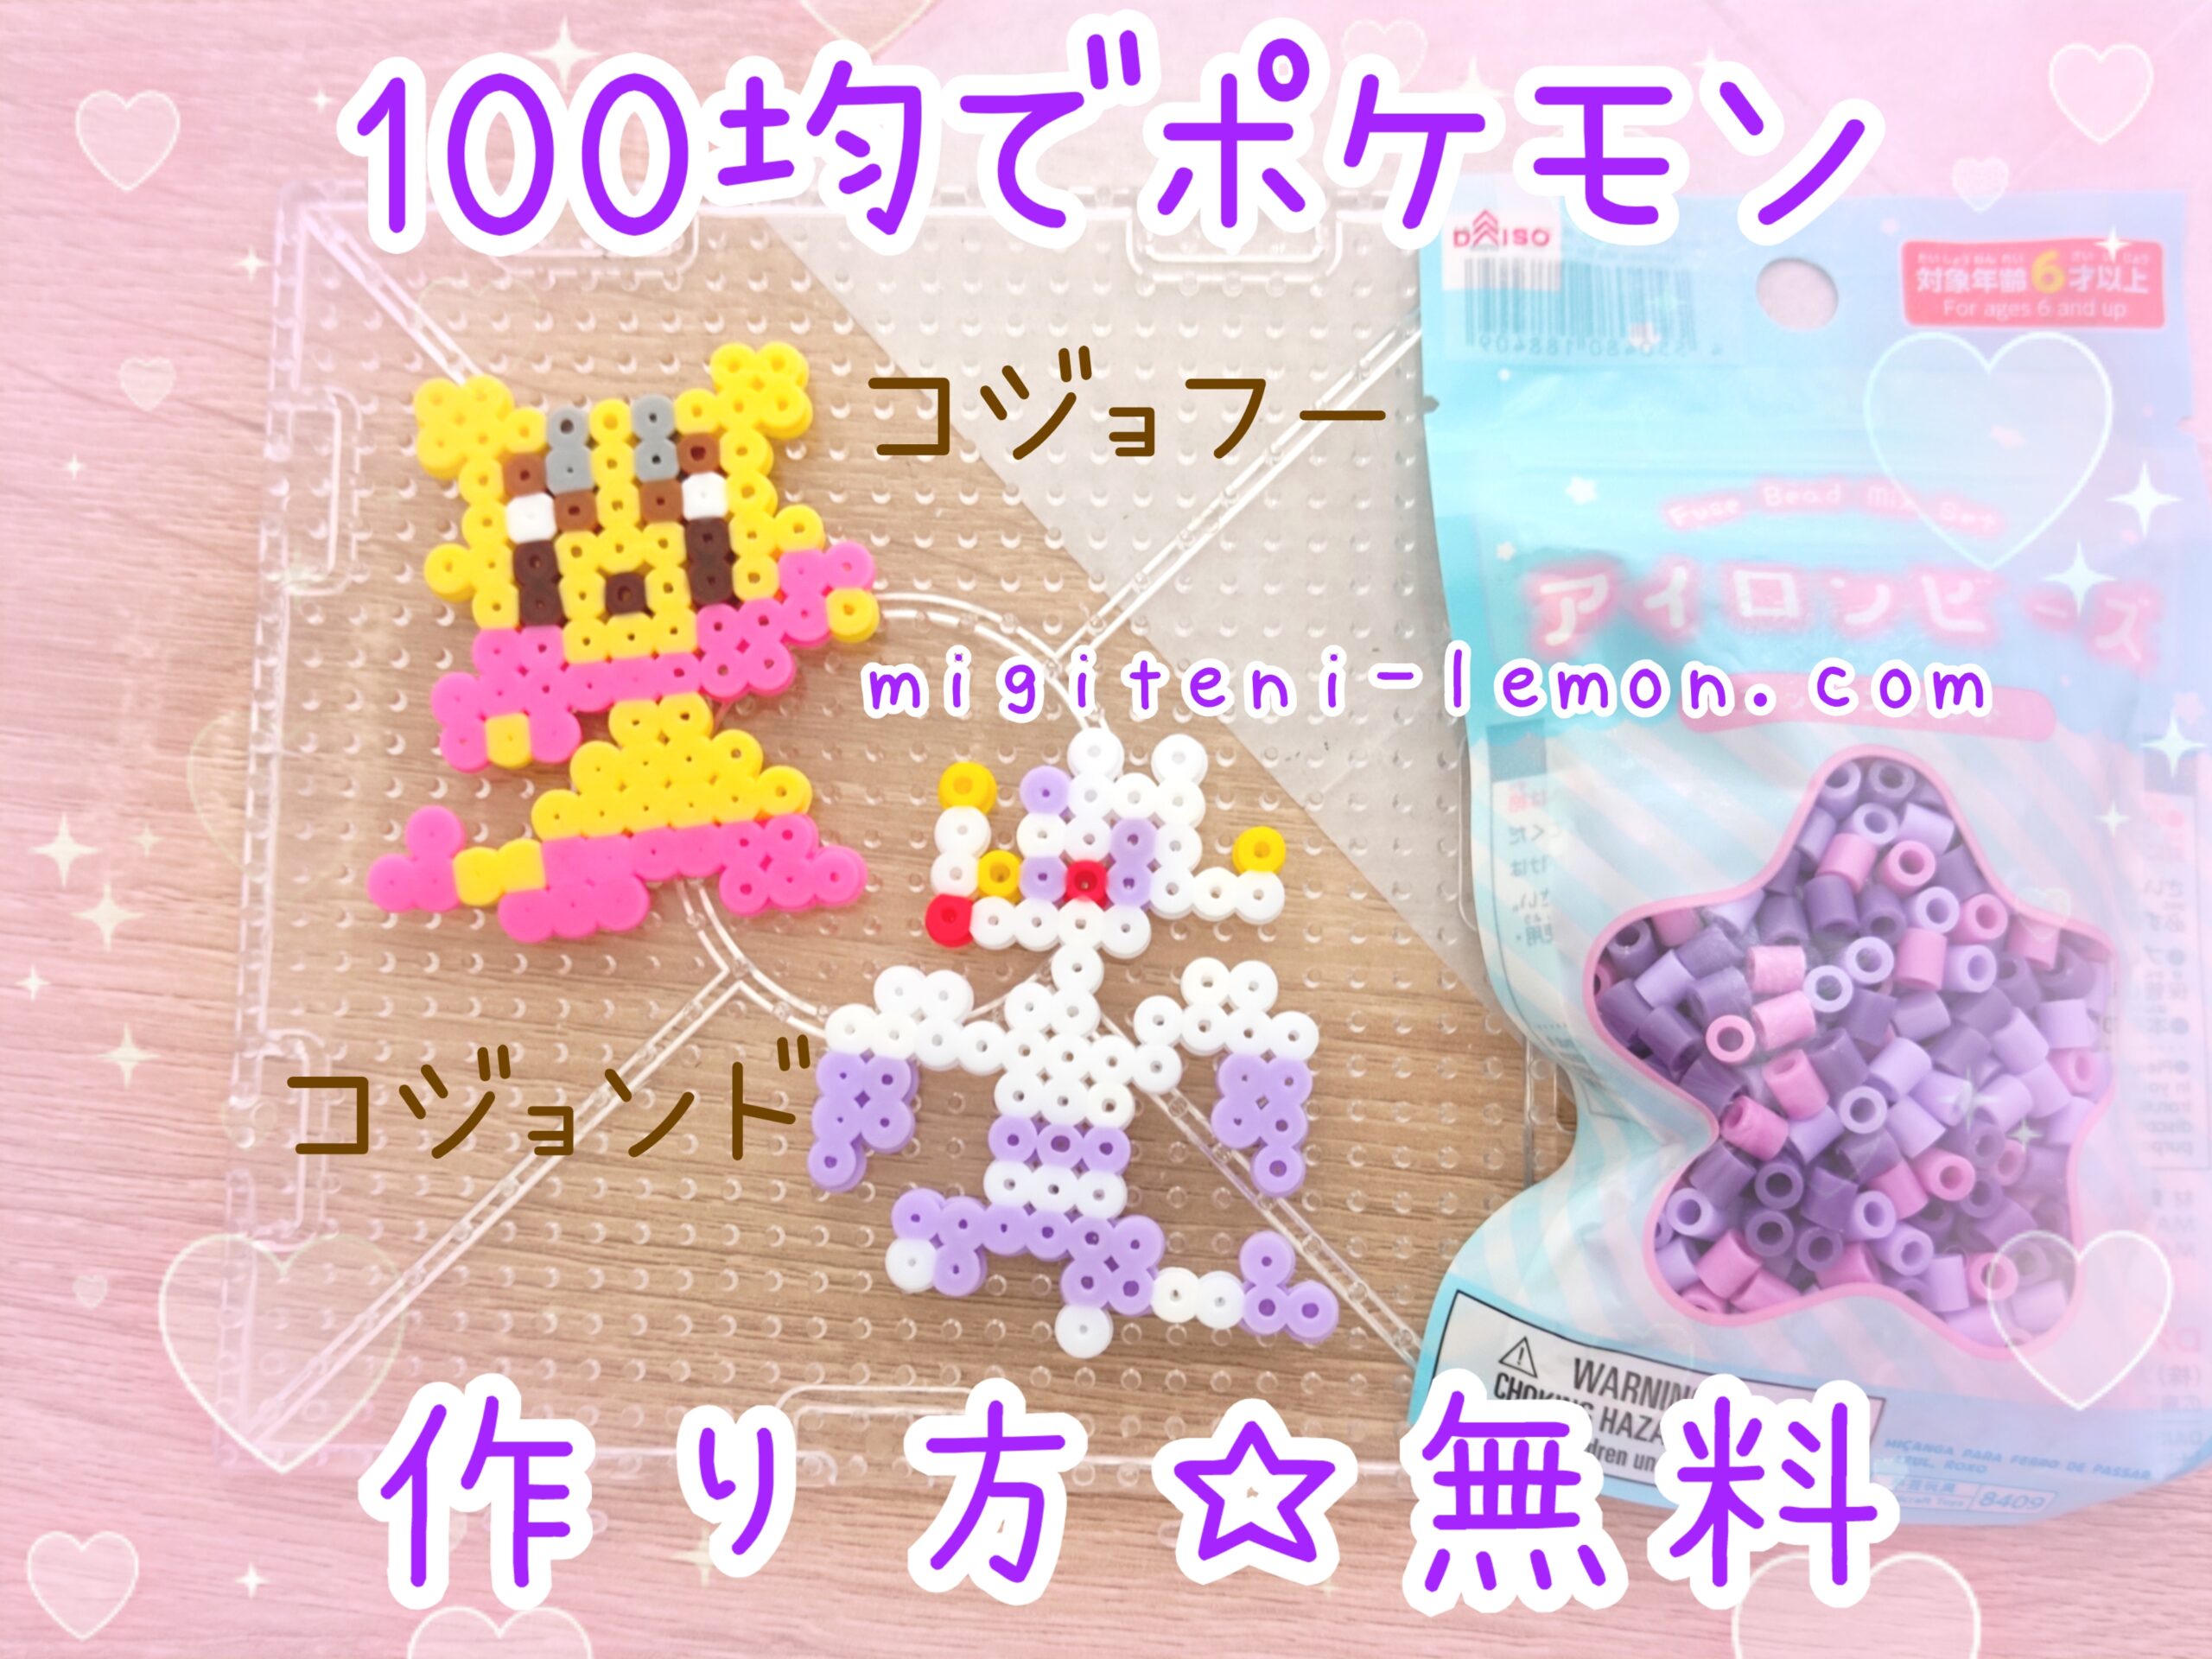 kojofu-mienfoo-kojondo-mienshao-pokemon-beads-zuan-free